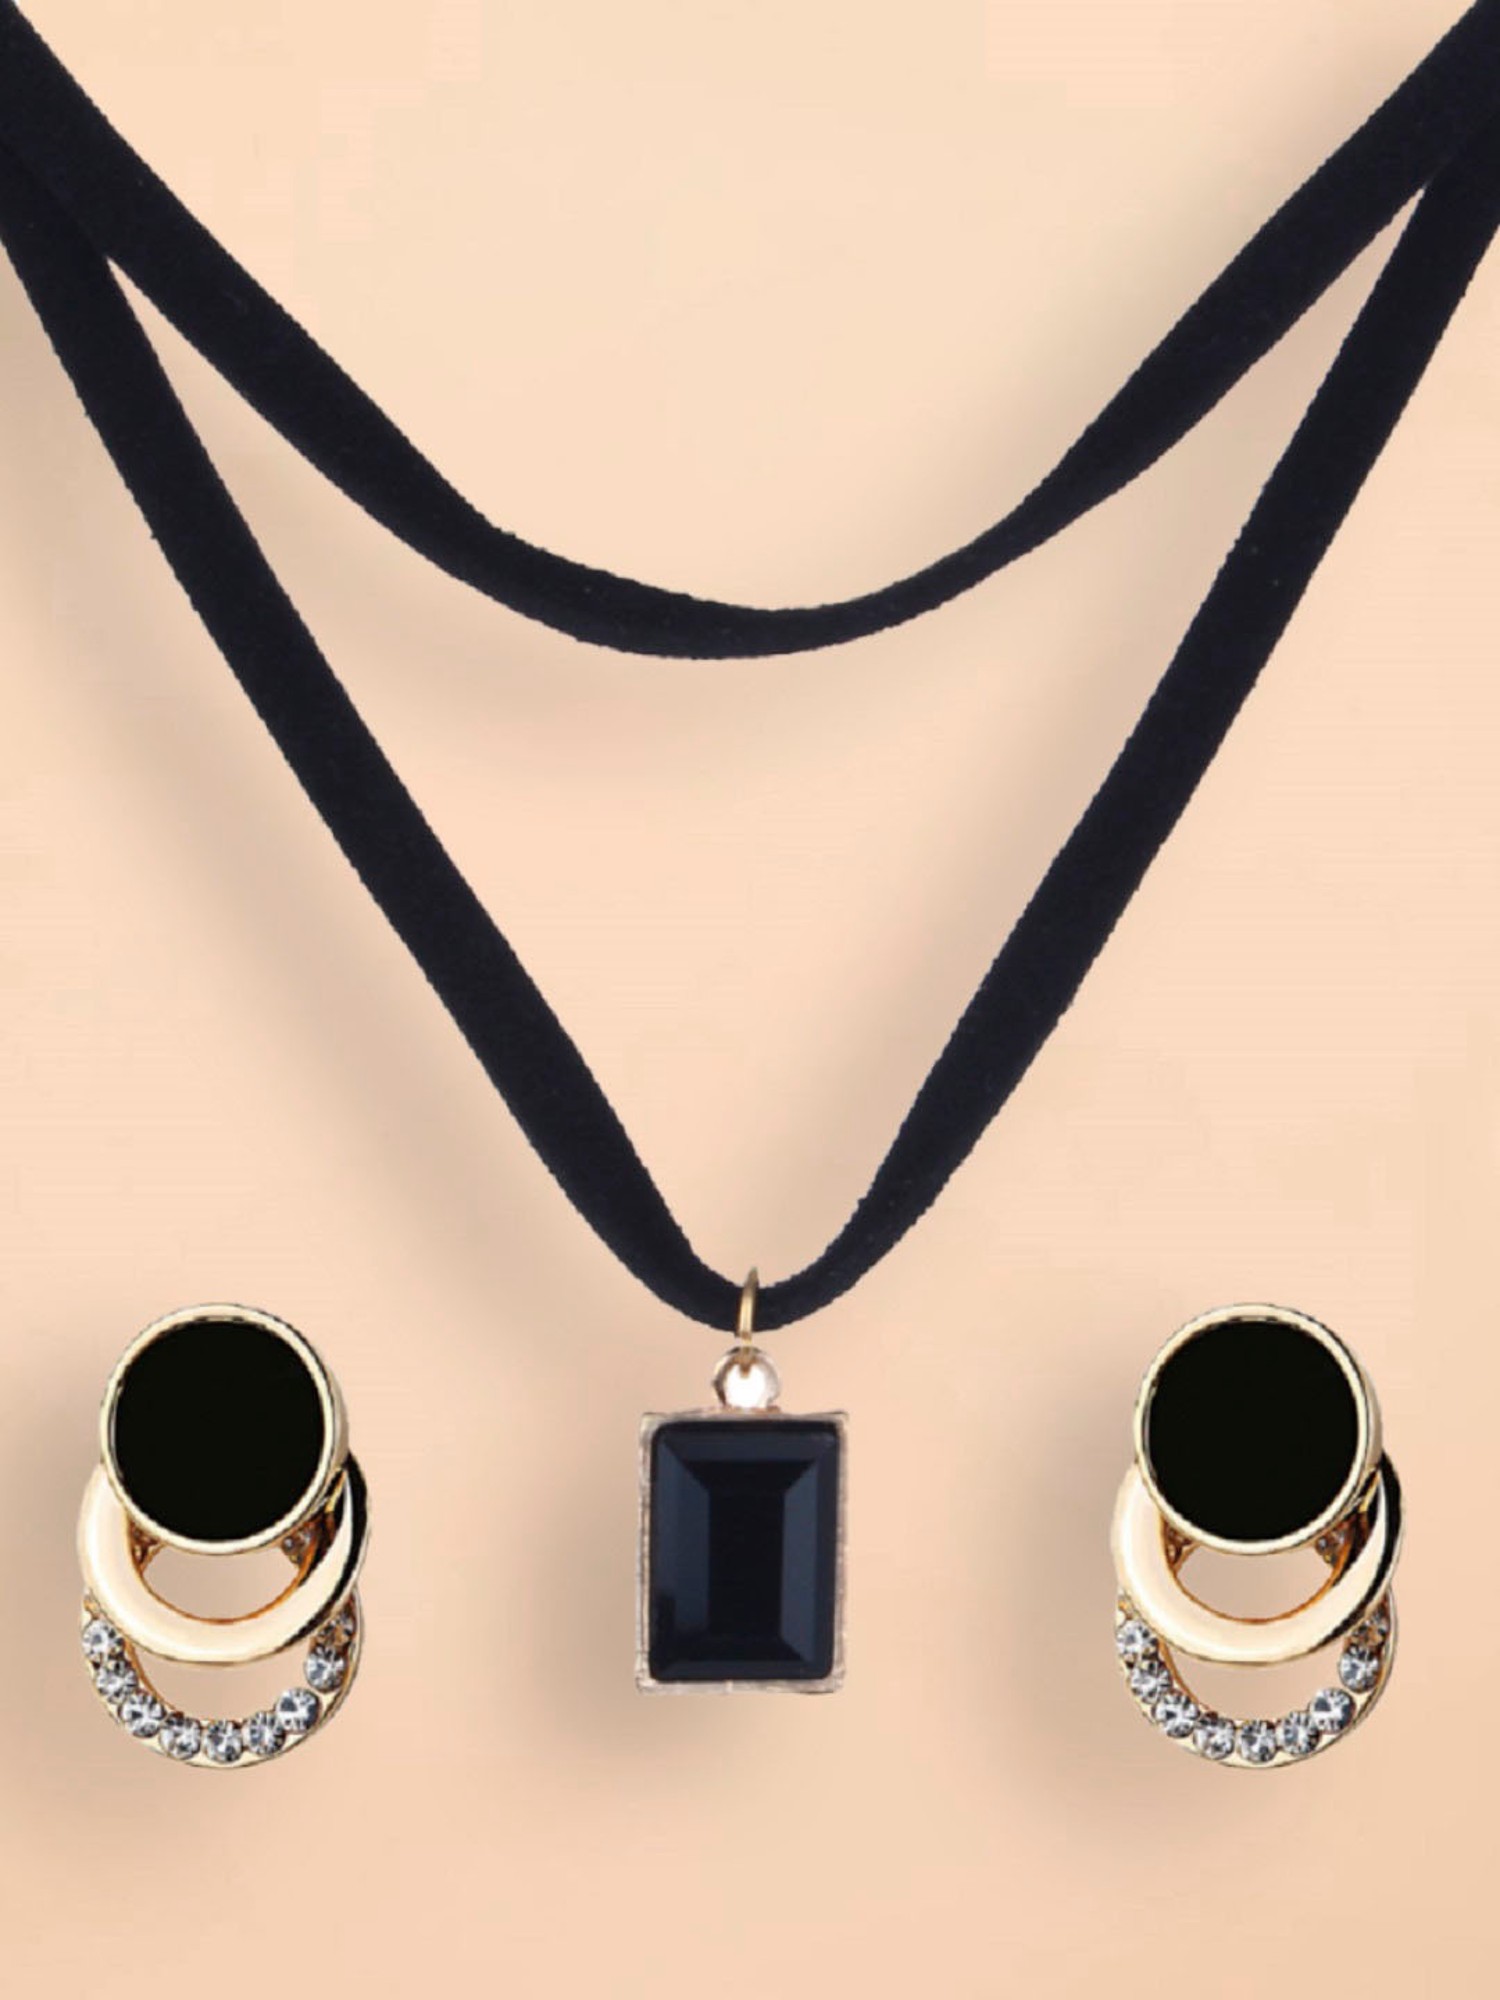 Buy Eivri Rakhi gift Necklace set Oxidized Jewelry Set - Jaipuri Black  Stone Necklace Earring Set - Elephant Theme Jewellery Set - Christmas Gift  For Her at Amazon.in